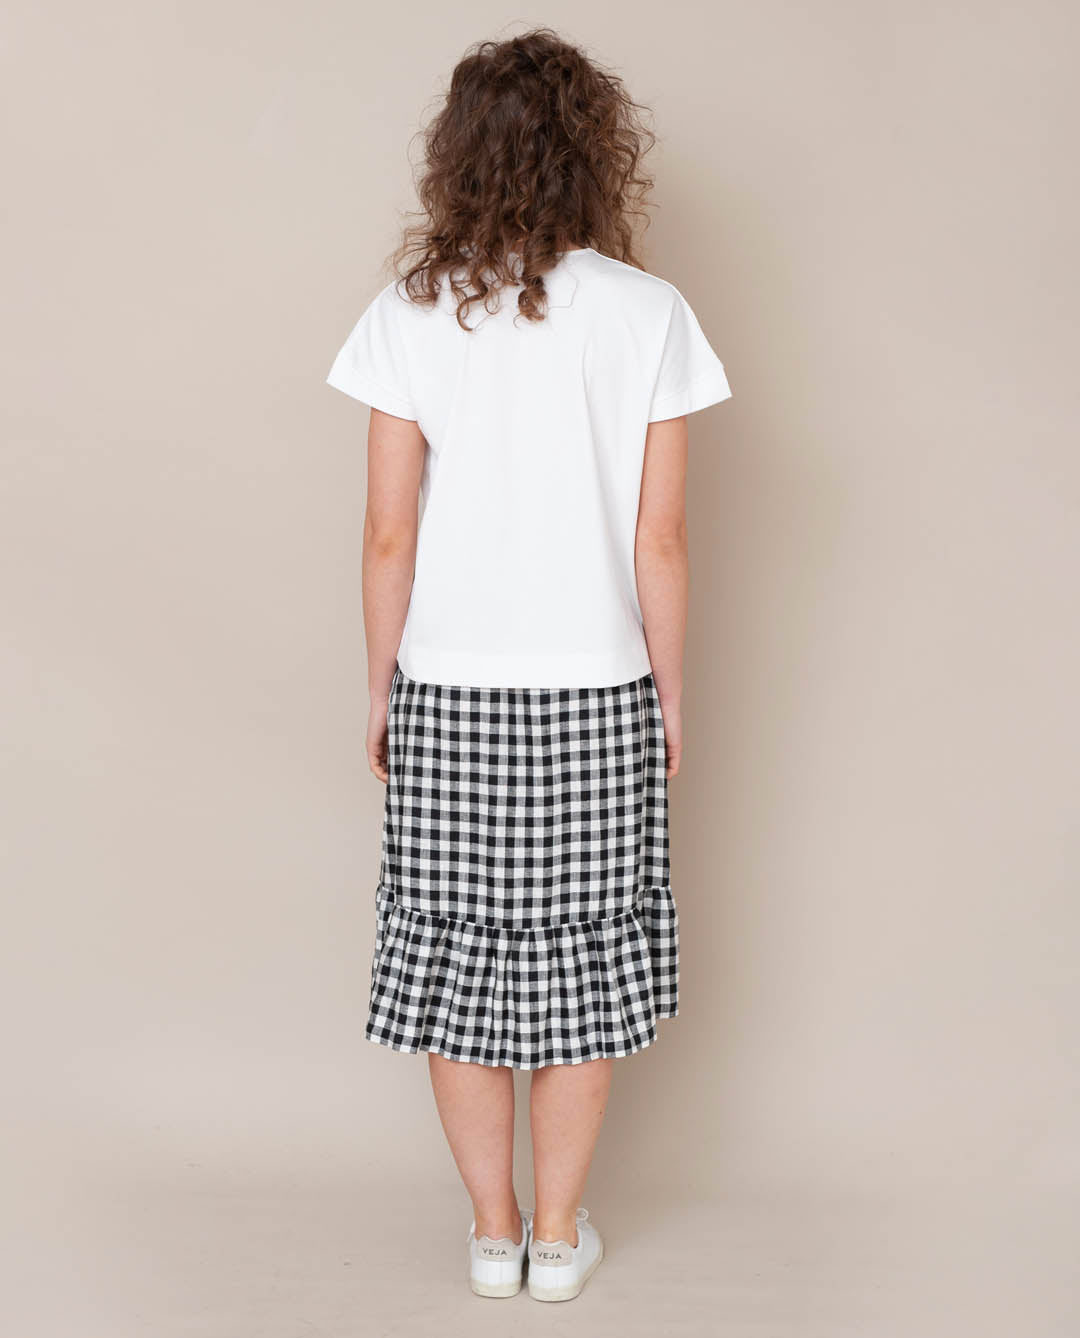 Rose-Gee Linen Skirt In Gingham